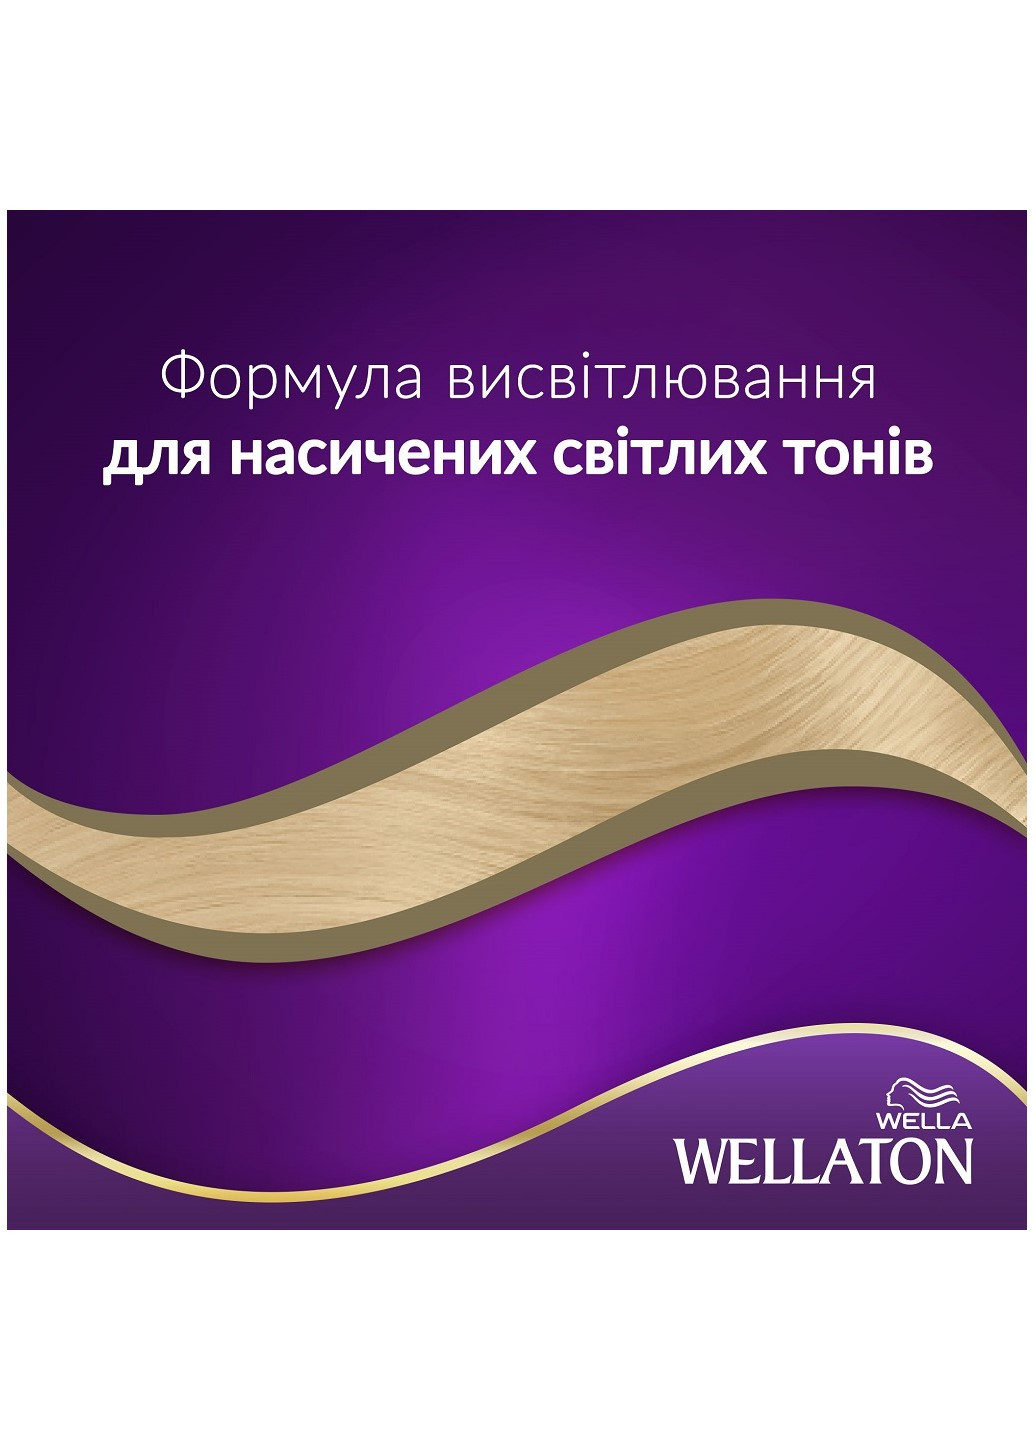 Стійка кремфарба для волосся Сахара 10/0 Wellaton - (197835608)